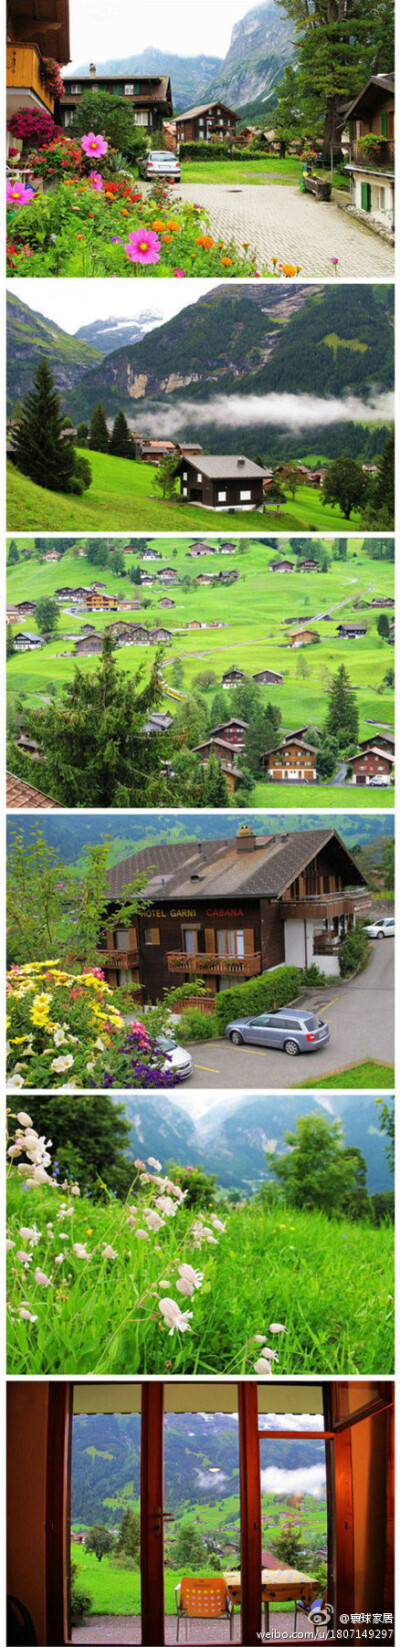 田园小镇—瑞士格林德尔瓦尔德,若能逗留于此,多么开心的事情!